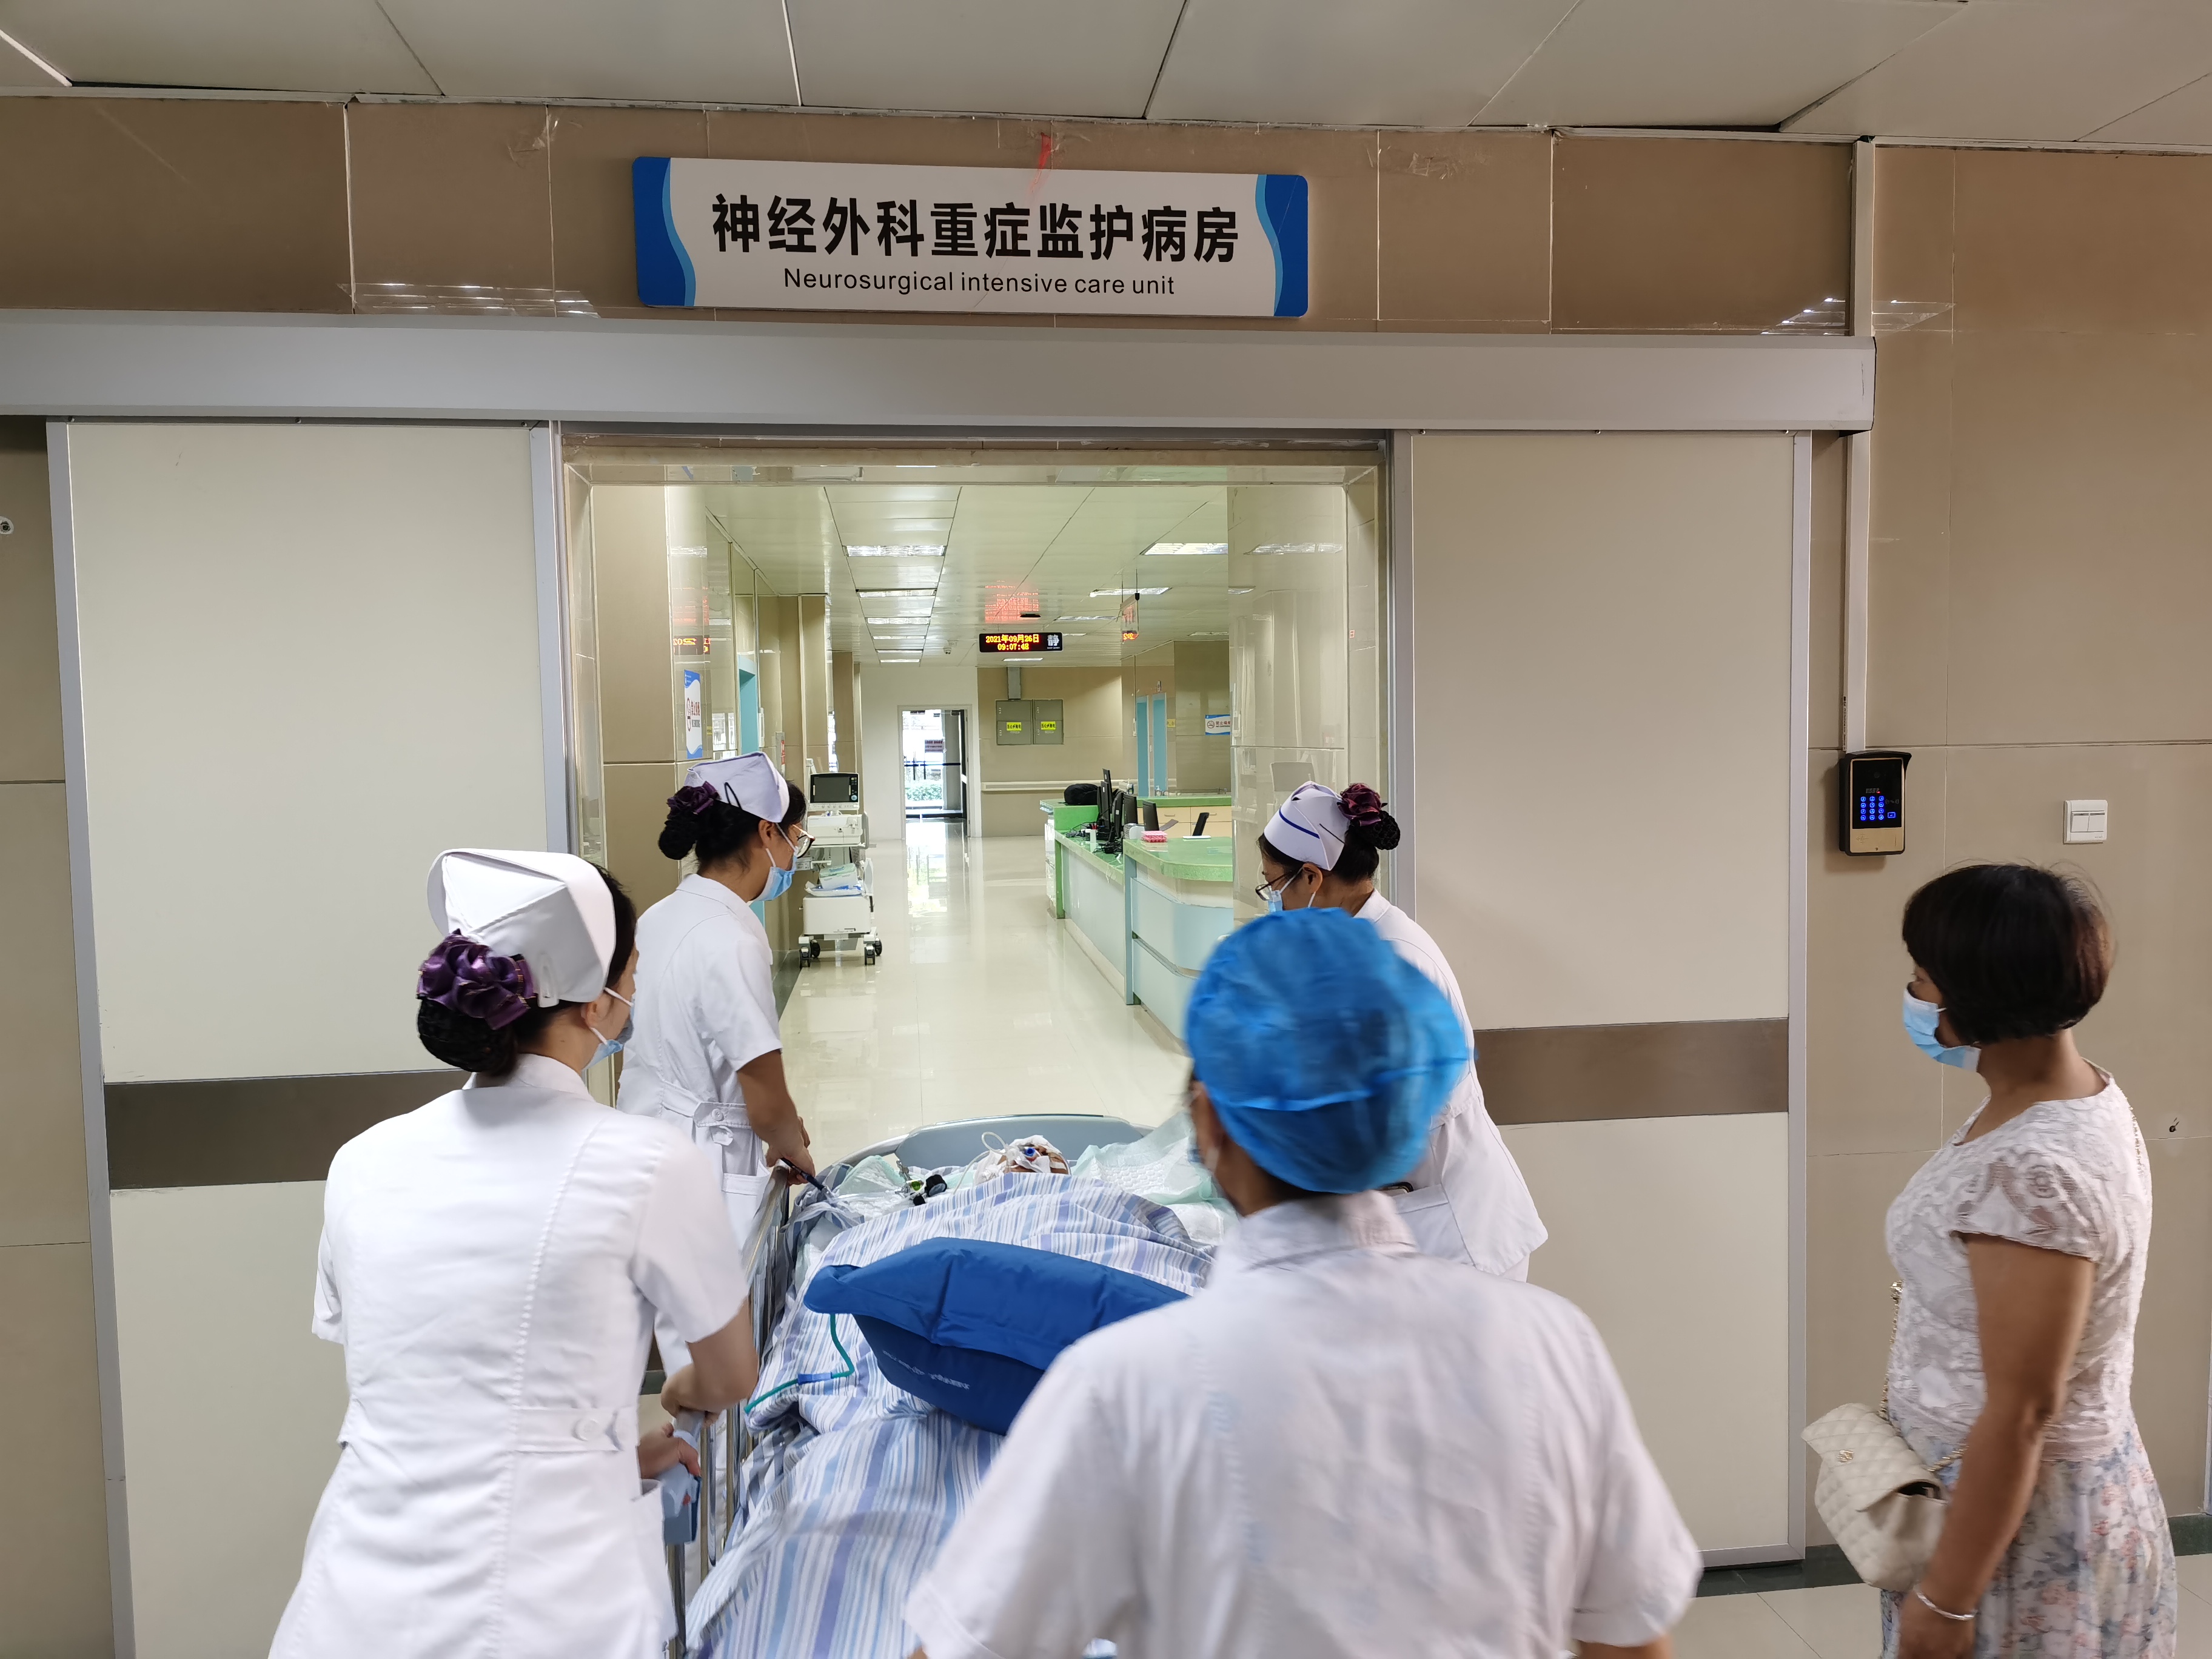 广西壮族自治区南溪山医院神经外科重症监护病房正式启用